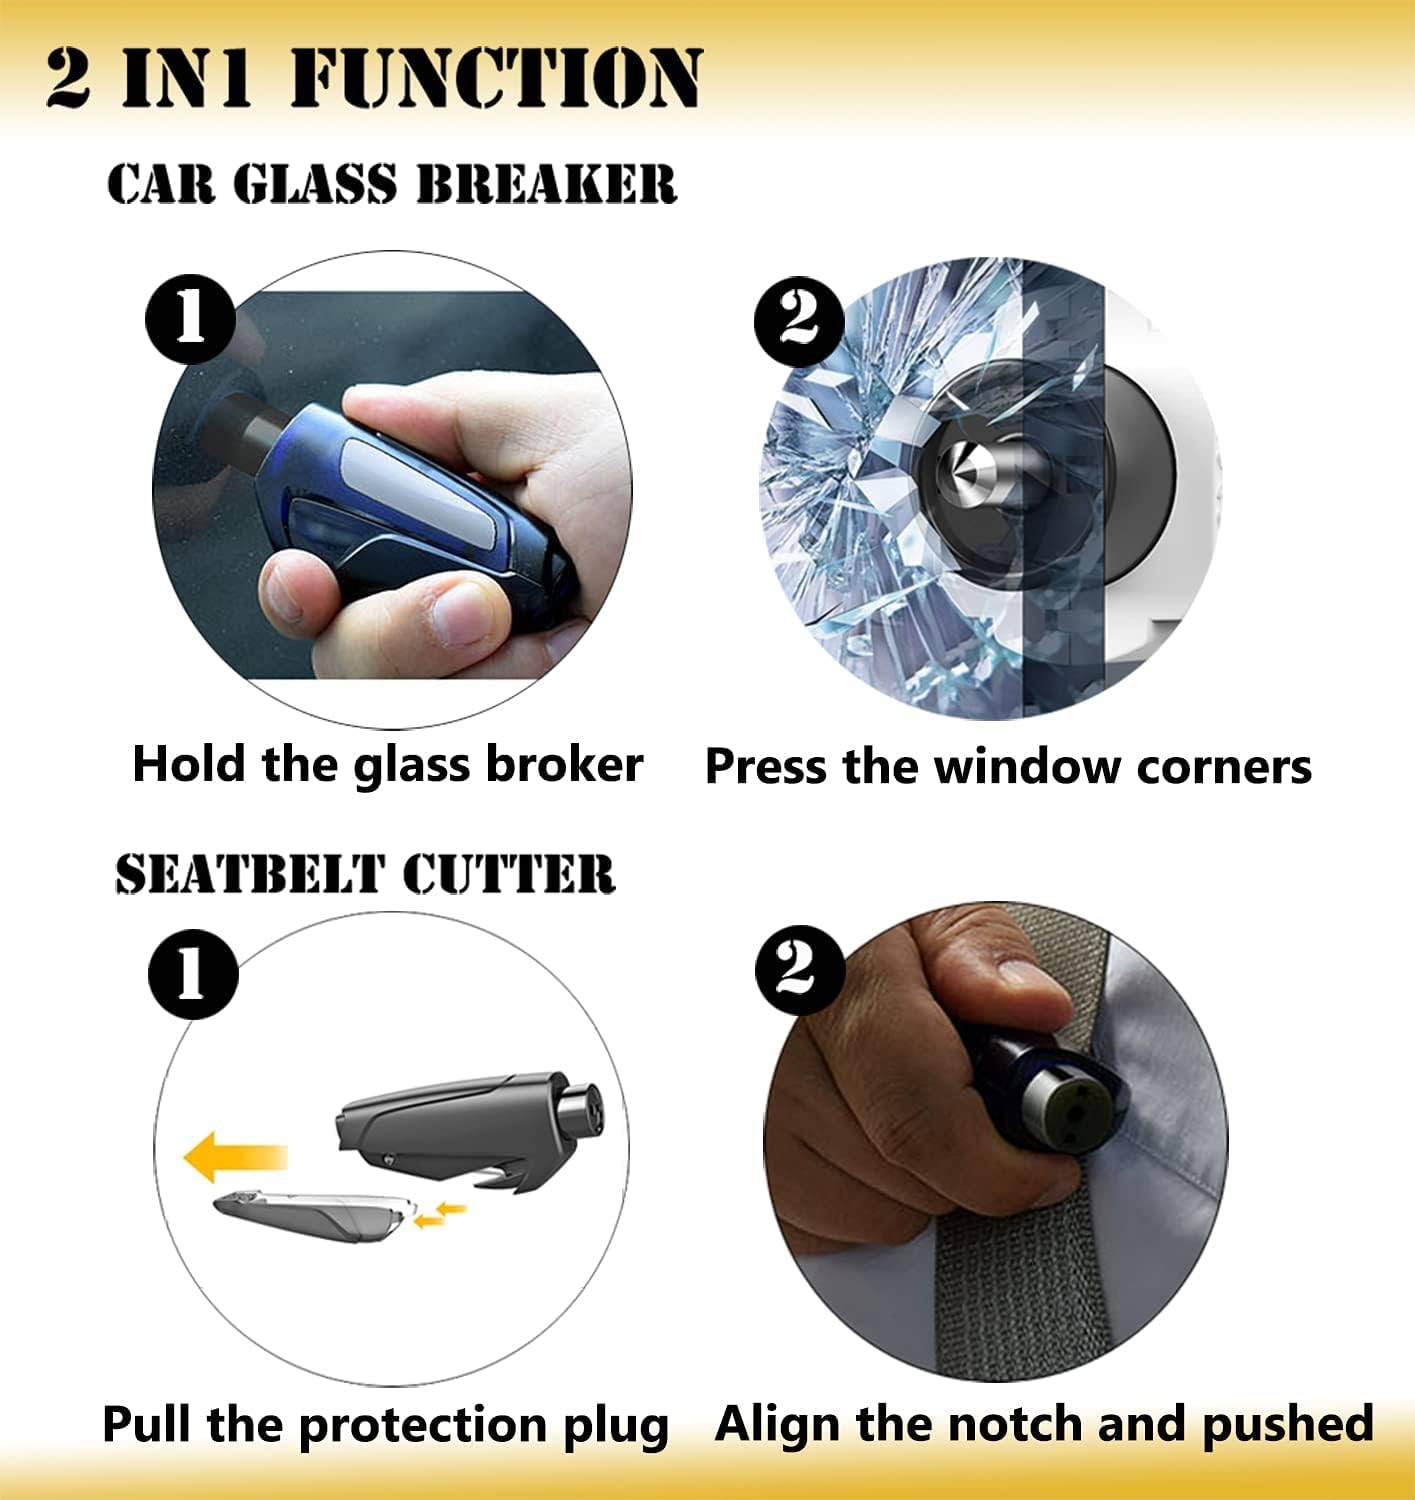 Nödhammare med bälteskniv och fönsterkross (3 av 7)